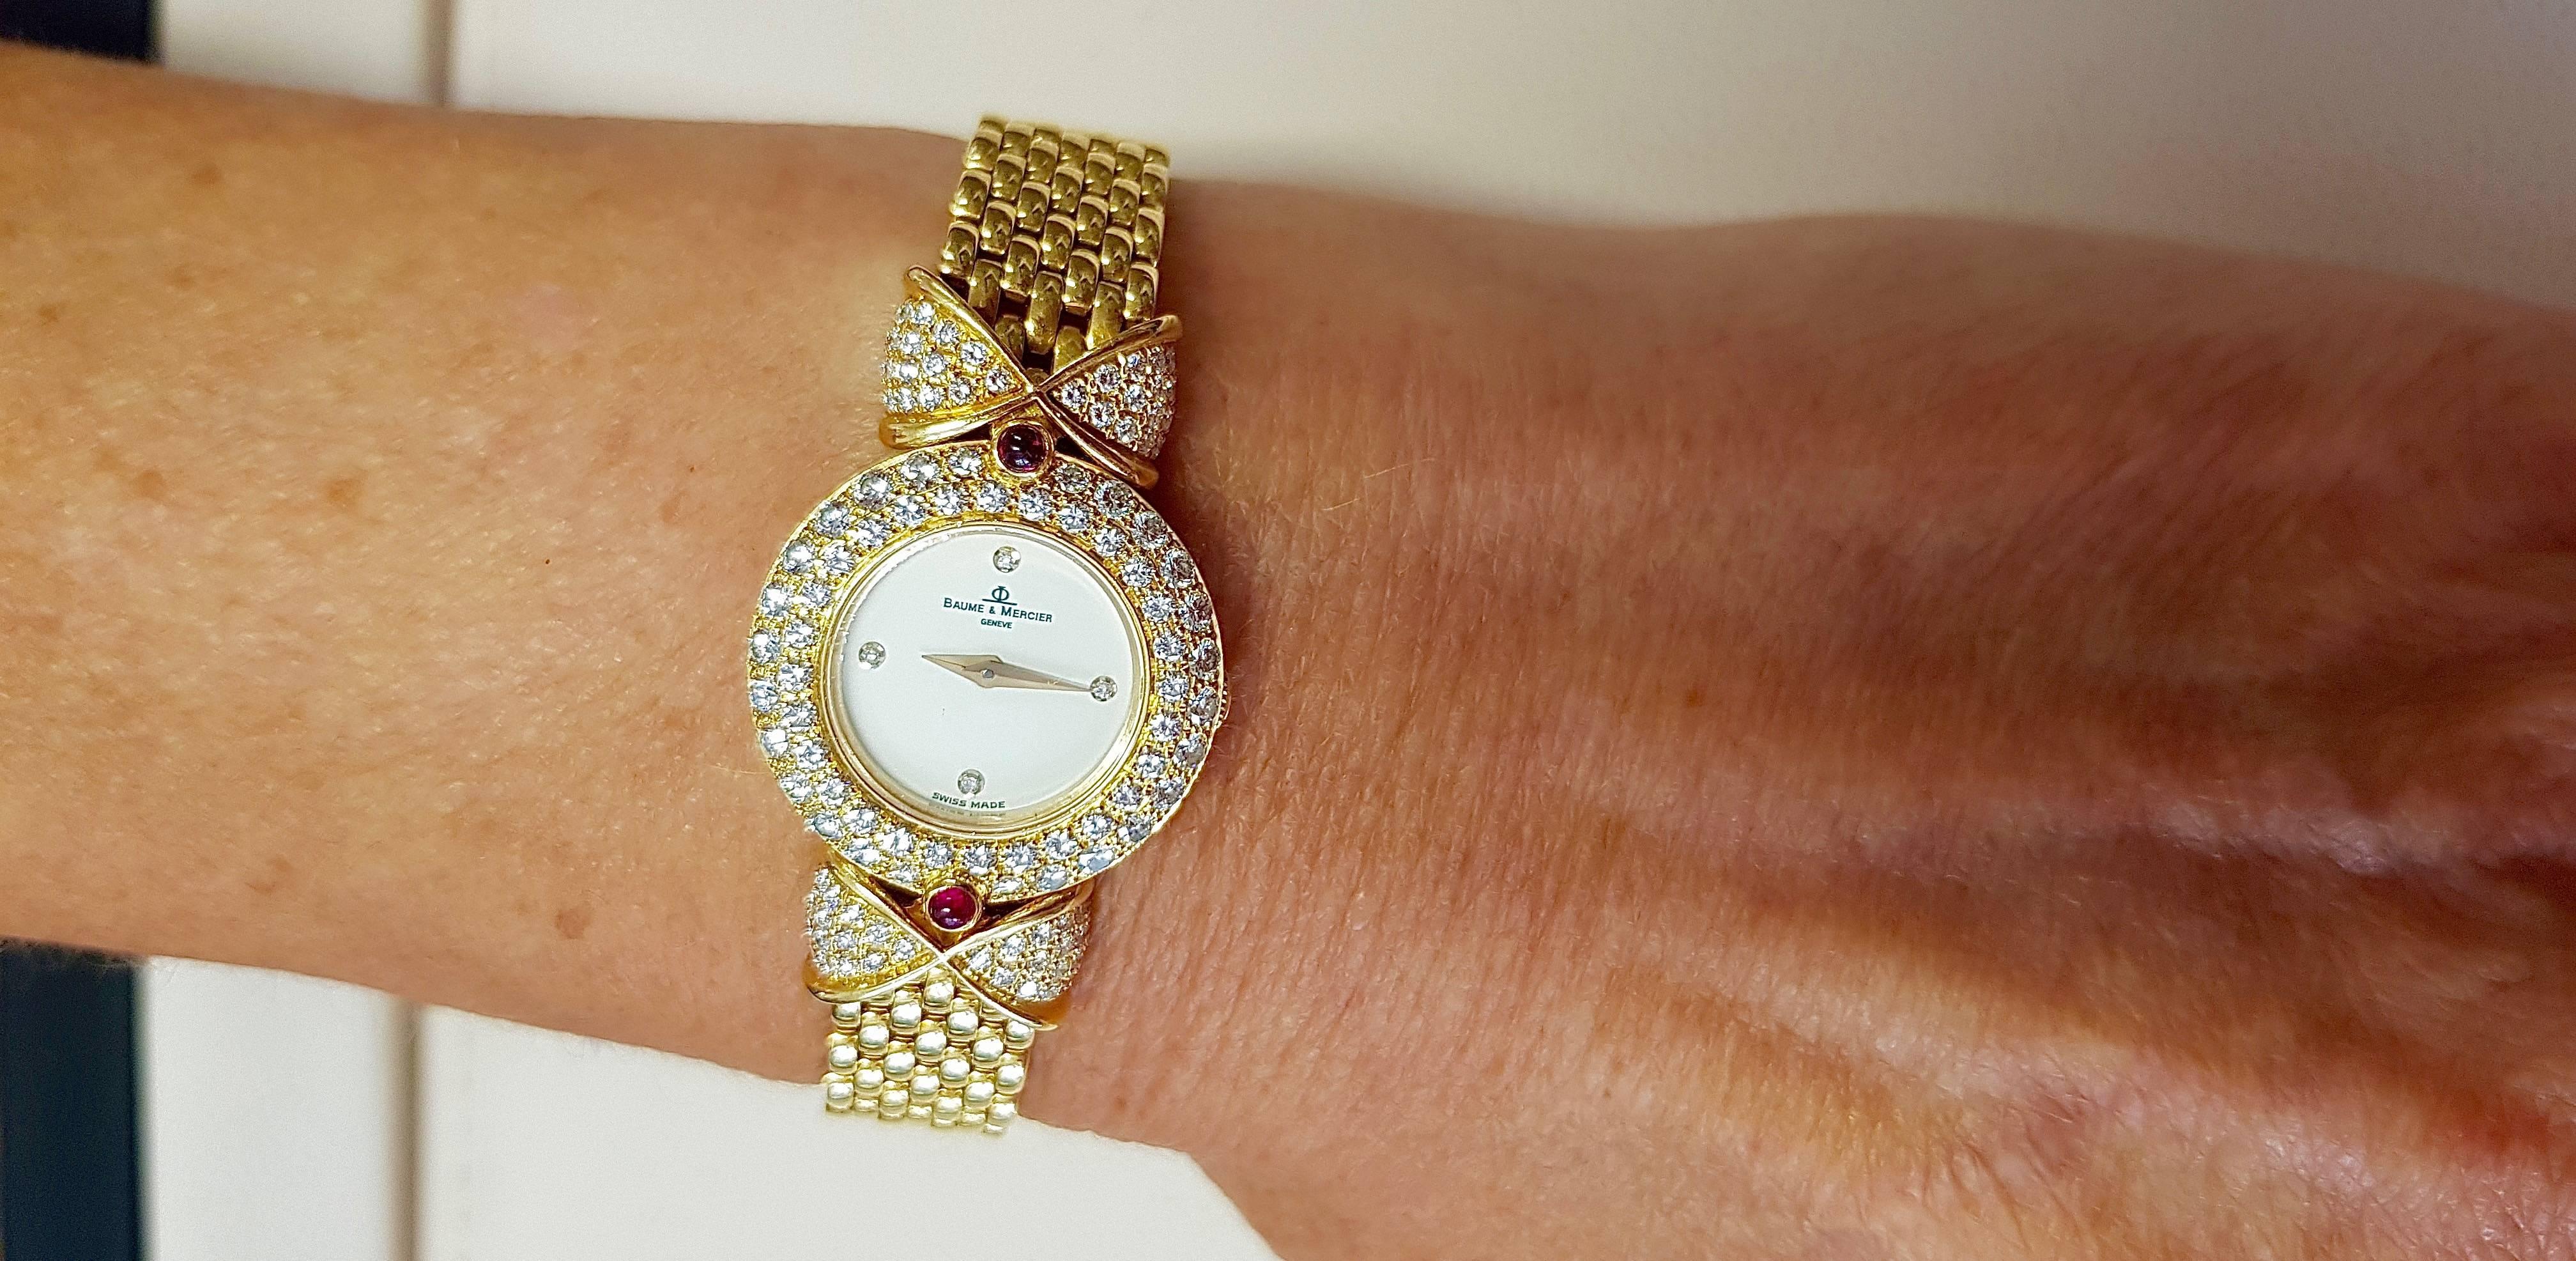 18 Karat Gold Baume & Mercier 'Loop Shape' Diamond Ladies Watch with Rubies 1